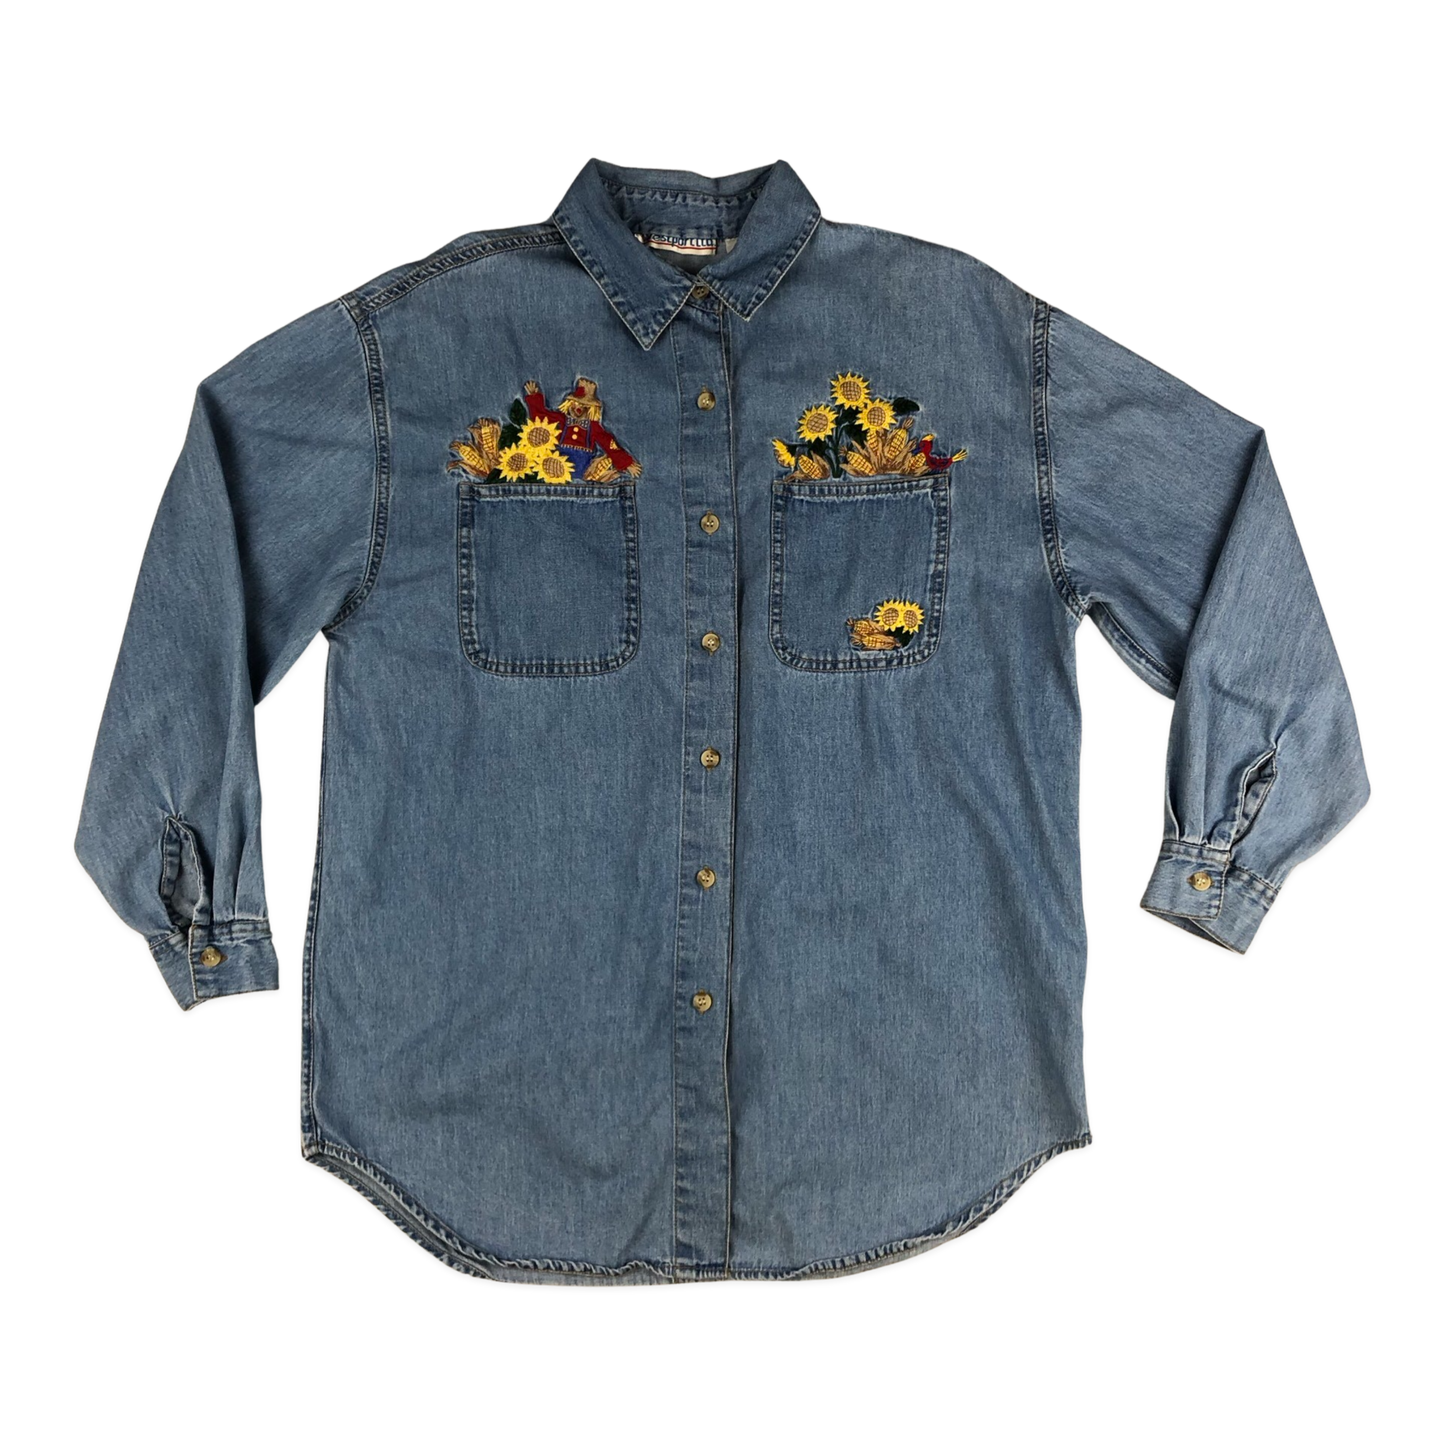 Vintage 80s Women's Embroidered Flower Denim Shirt 16